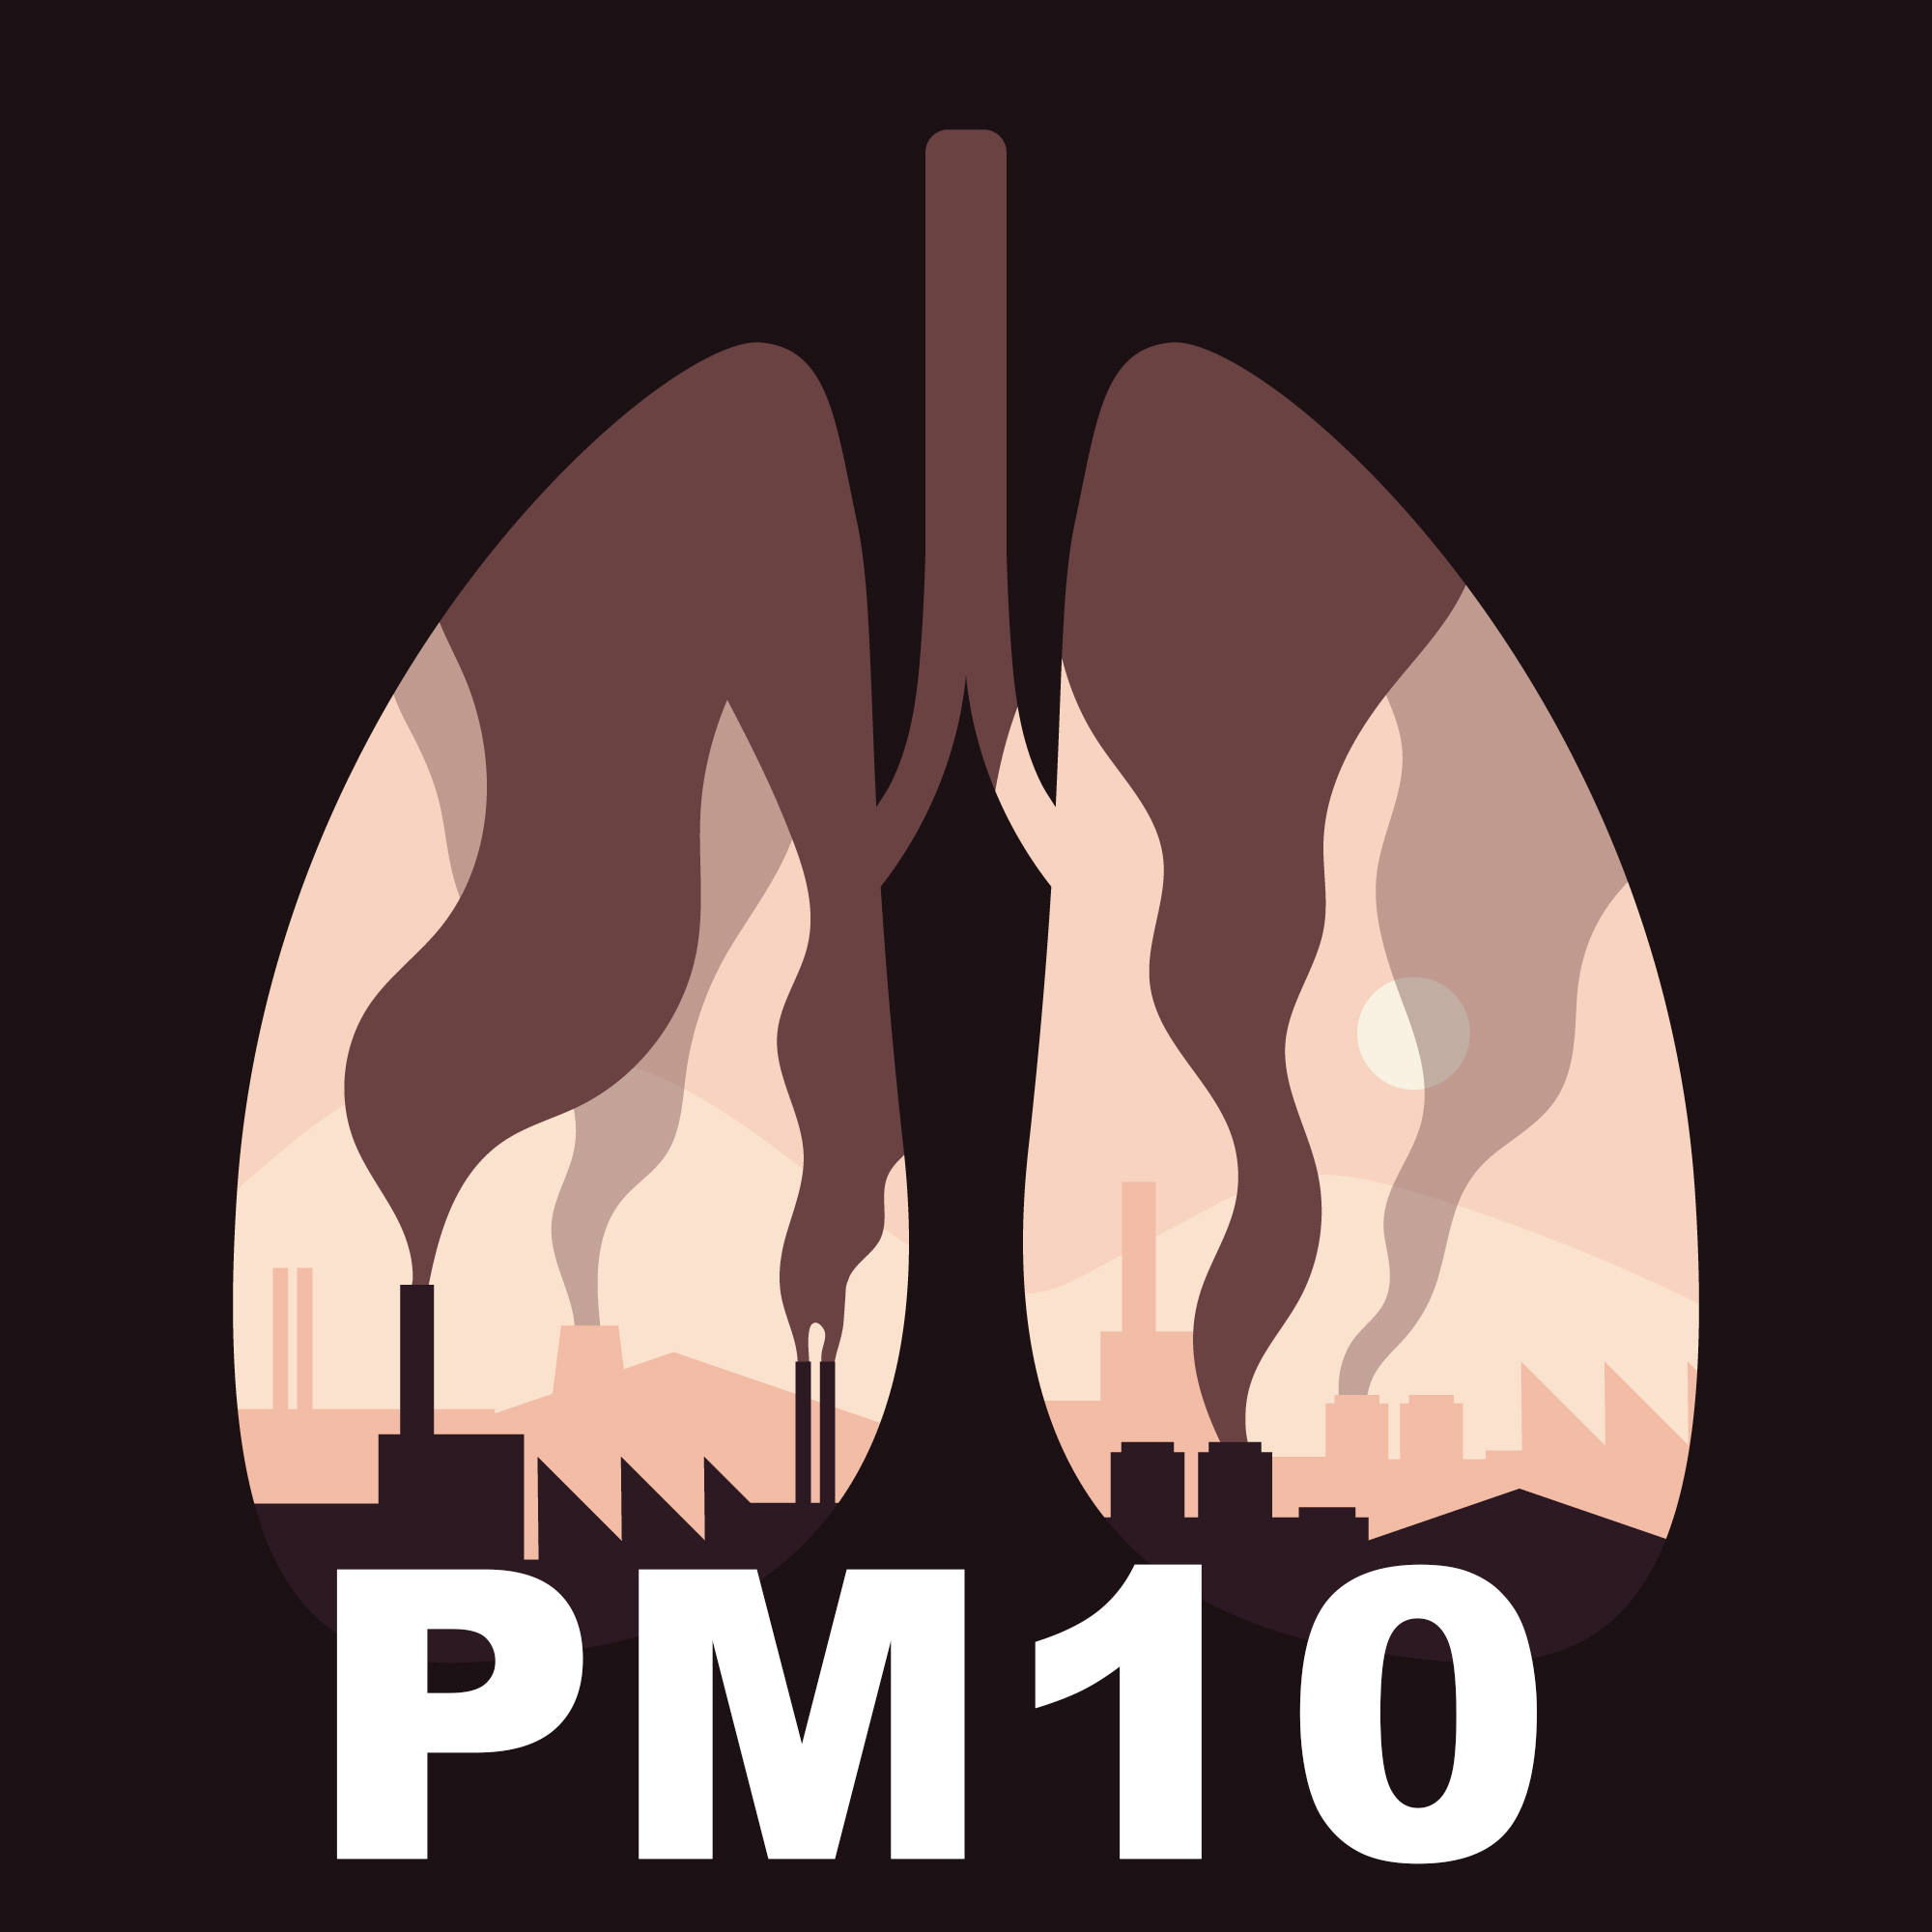 Informacja o zagrożeniach i zaleceniach po przekroczeniu pyłu PM10